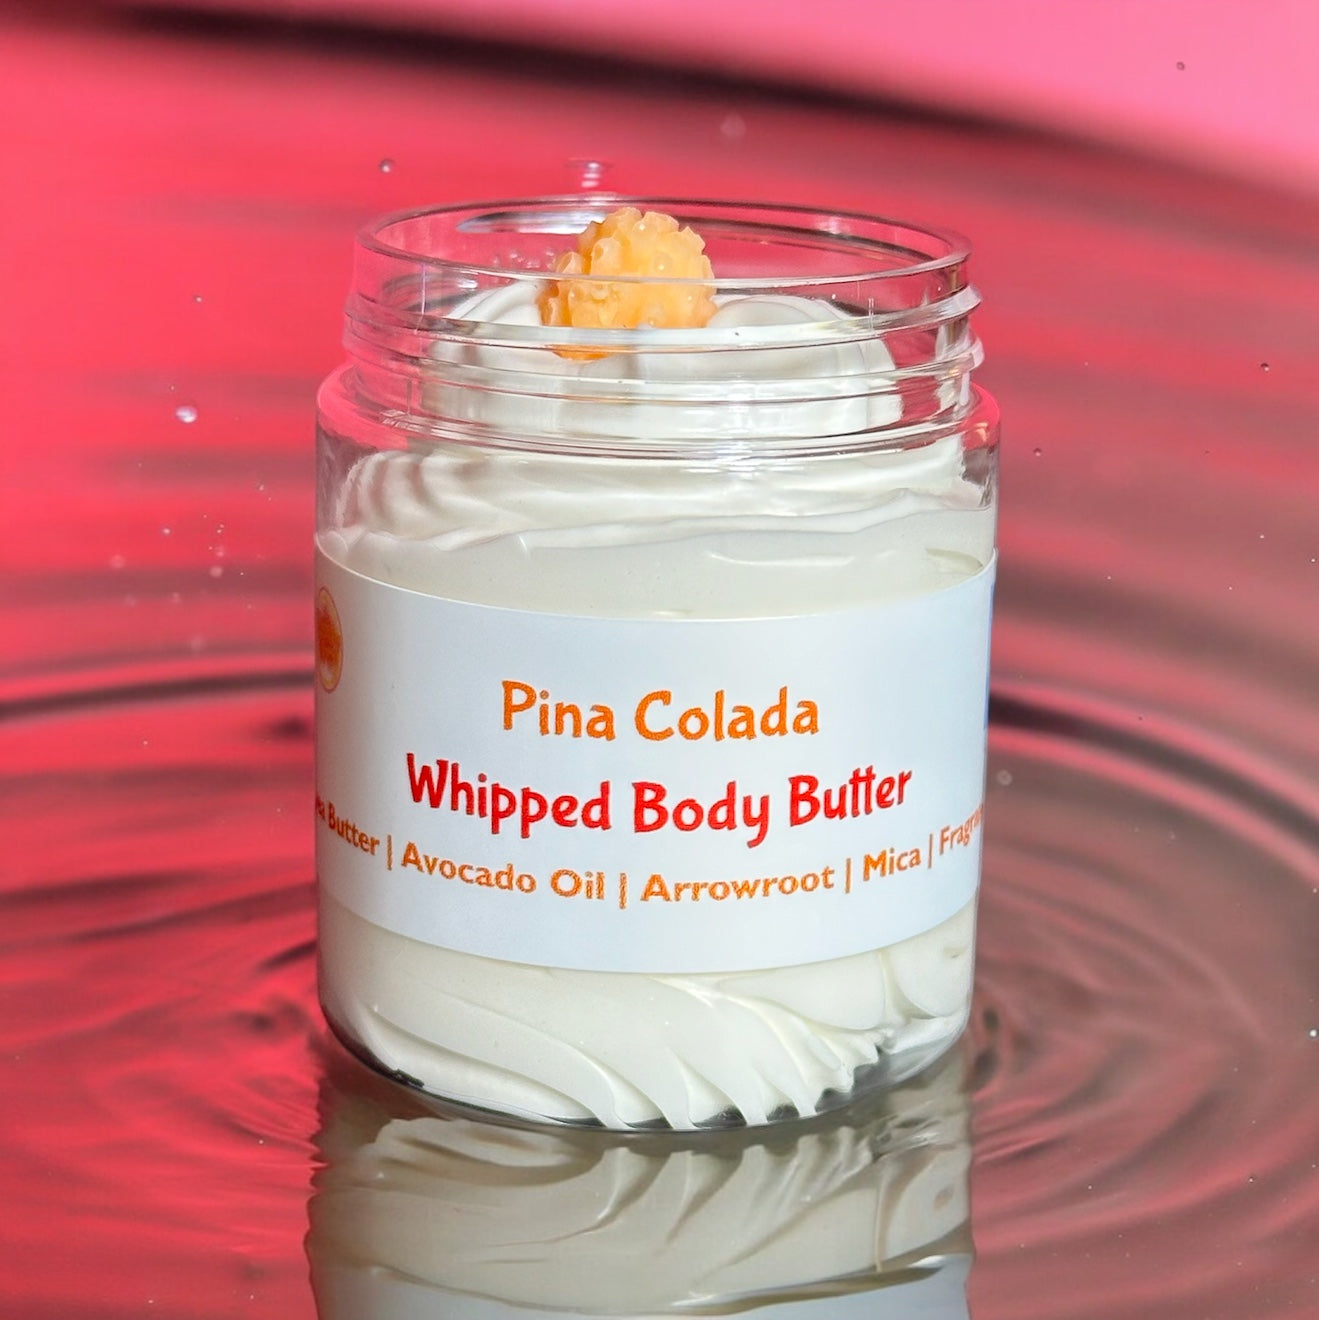 Piña Colada Whipped Body Butter